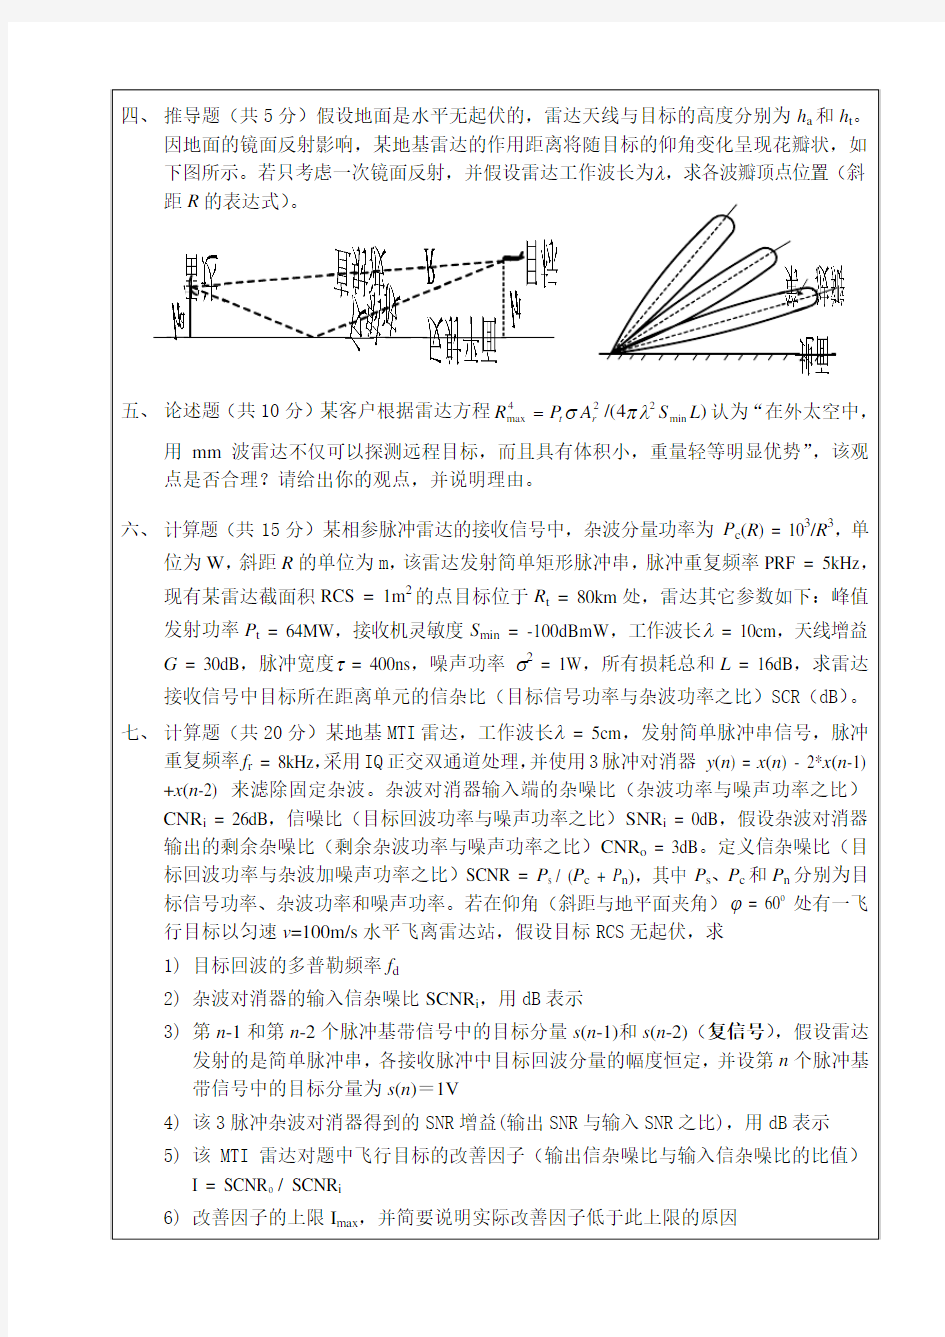 南京理工大学 雷达原理 08年期末考试题